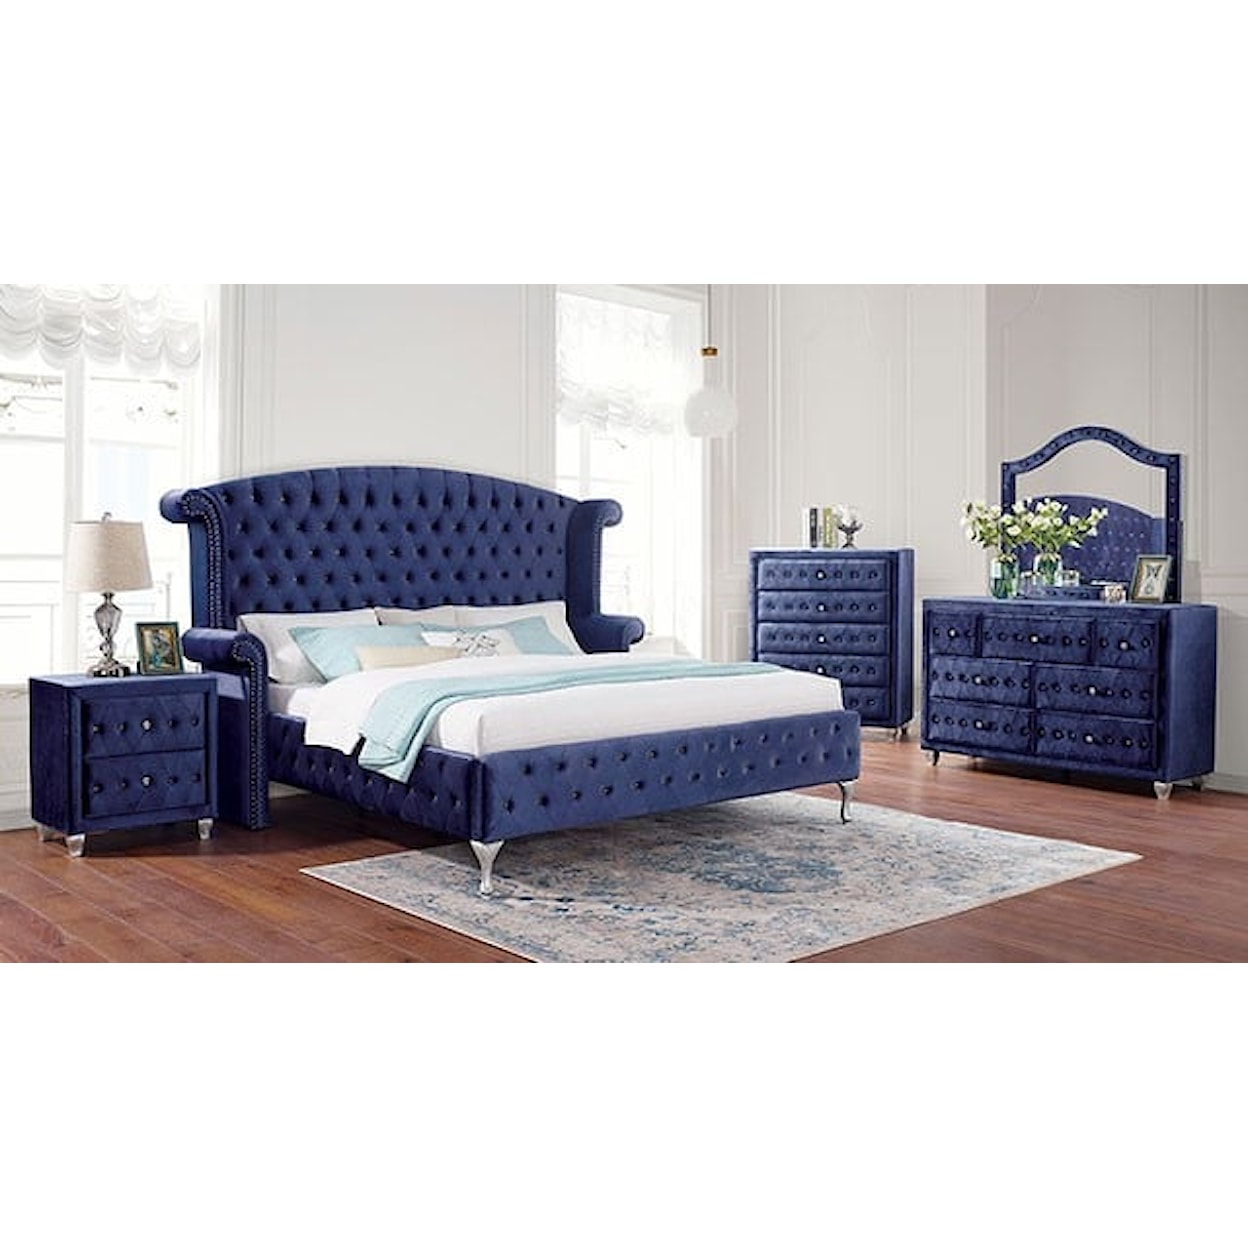 Furniture of America Alzir 4 Pc. Queen Bedroom Set